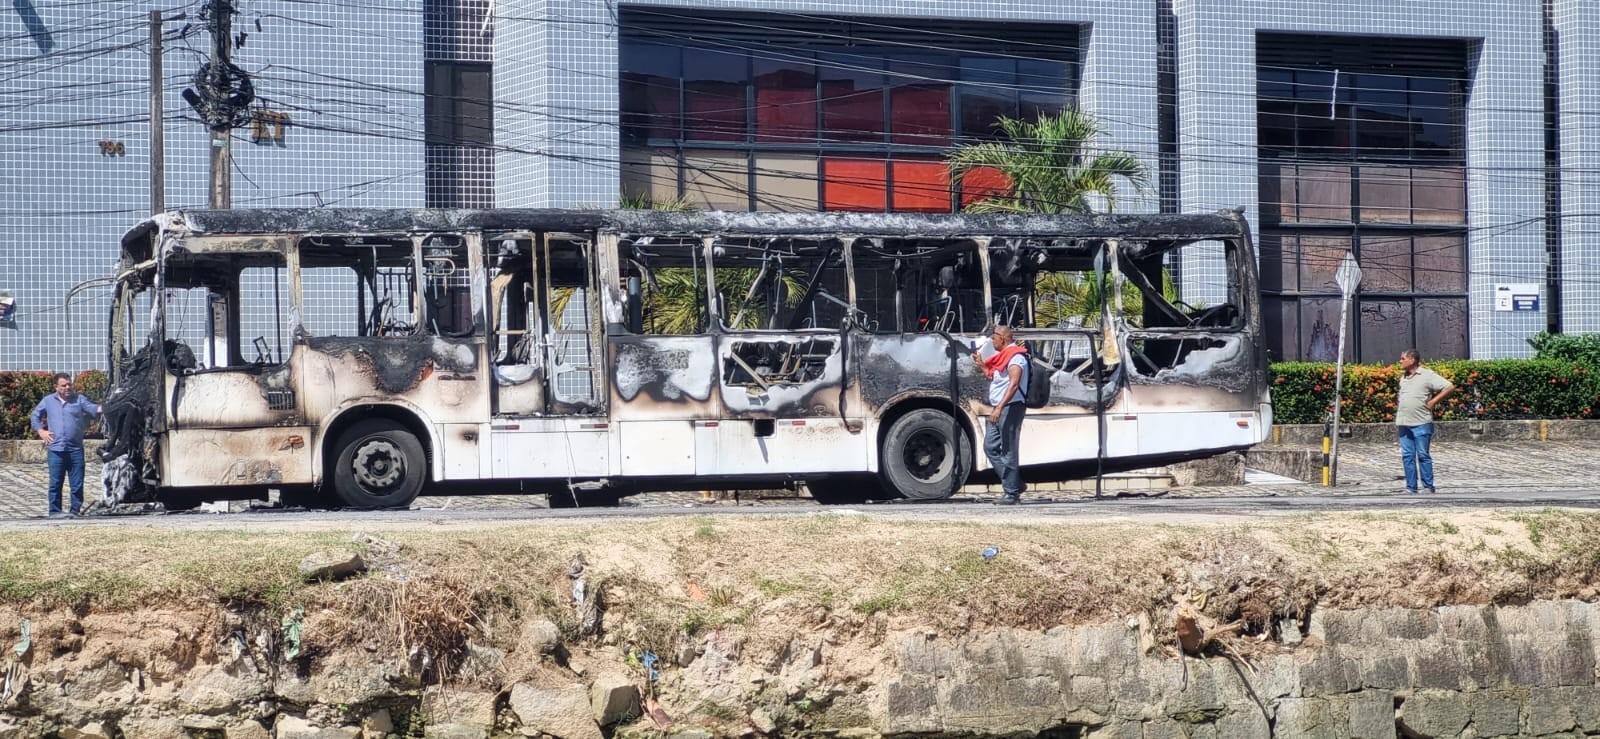 Ônibus com mais de 60 passageiros pega fogo e provoca nuvem de fumaça em Maceió 